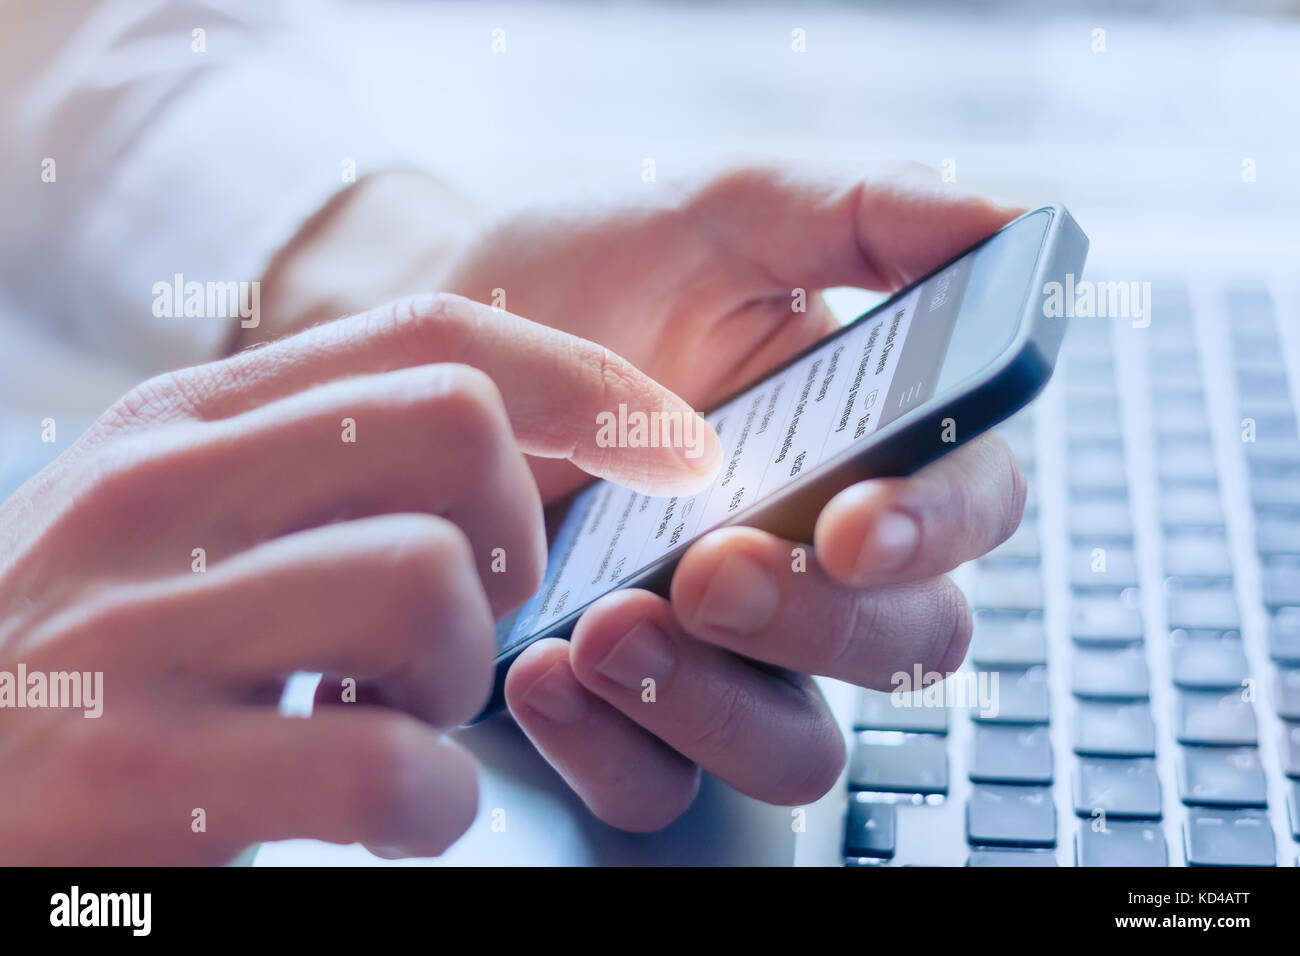 Manager E-Mail sendet seine Business Team mit Smartphone zu kontaktieren, Nahaufnahme, Laptop im Hintergrund Stockfoto